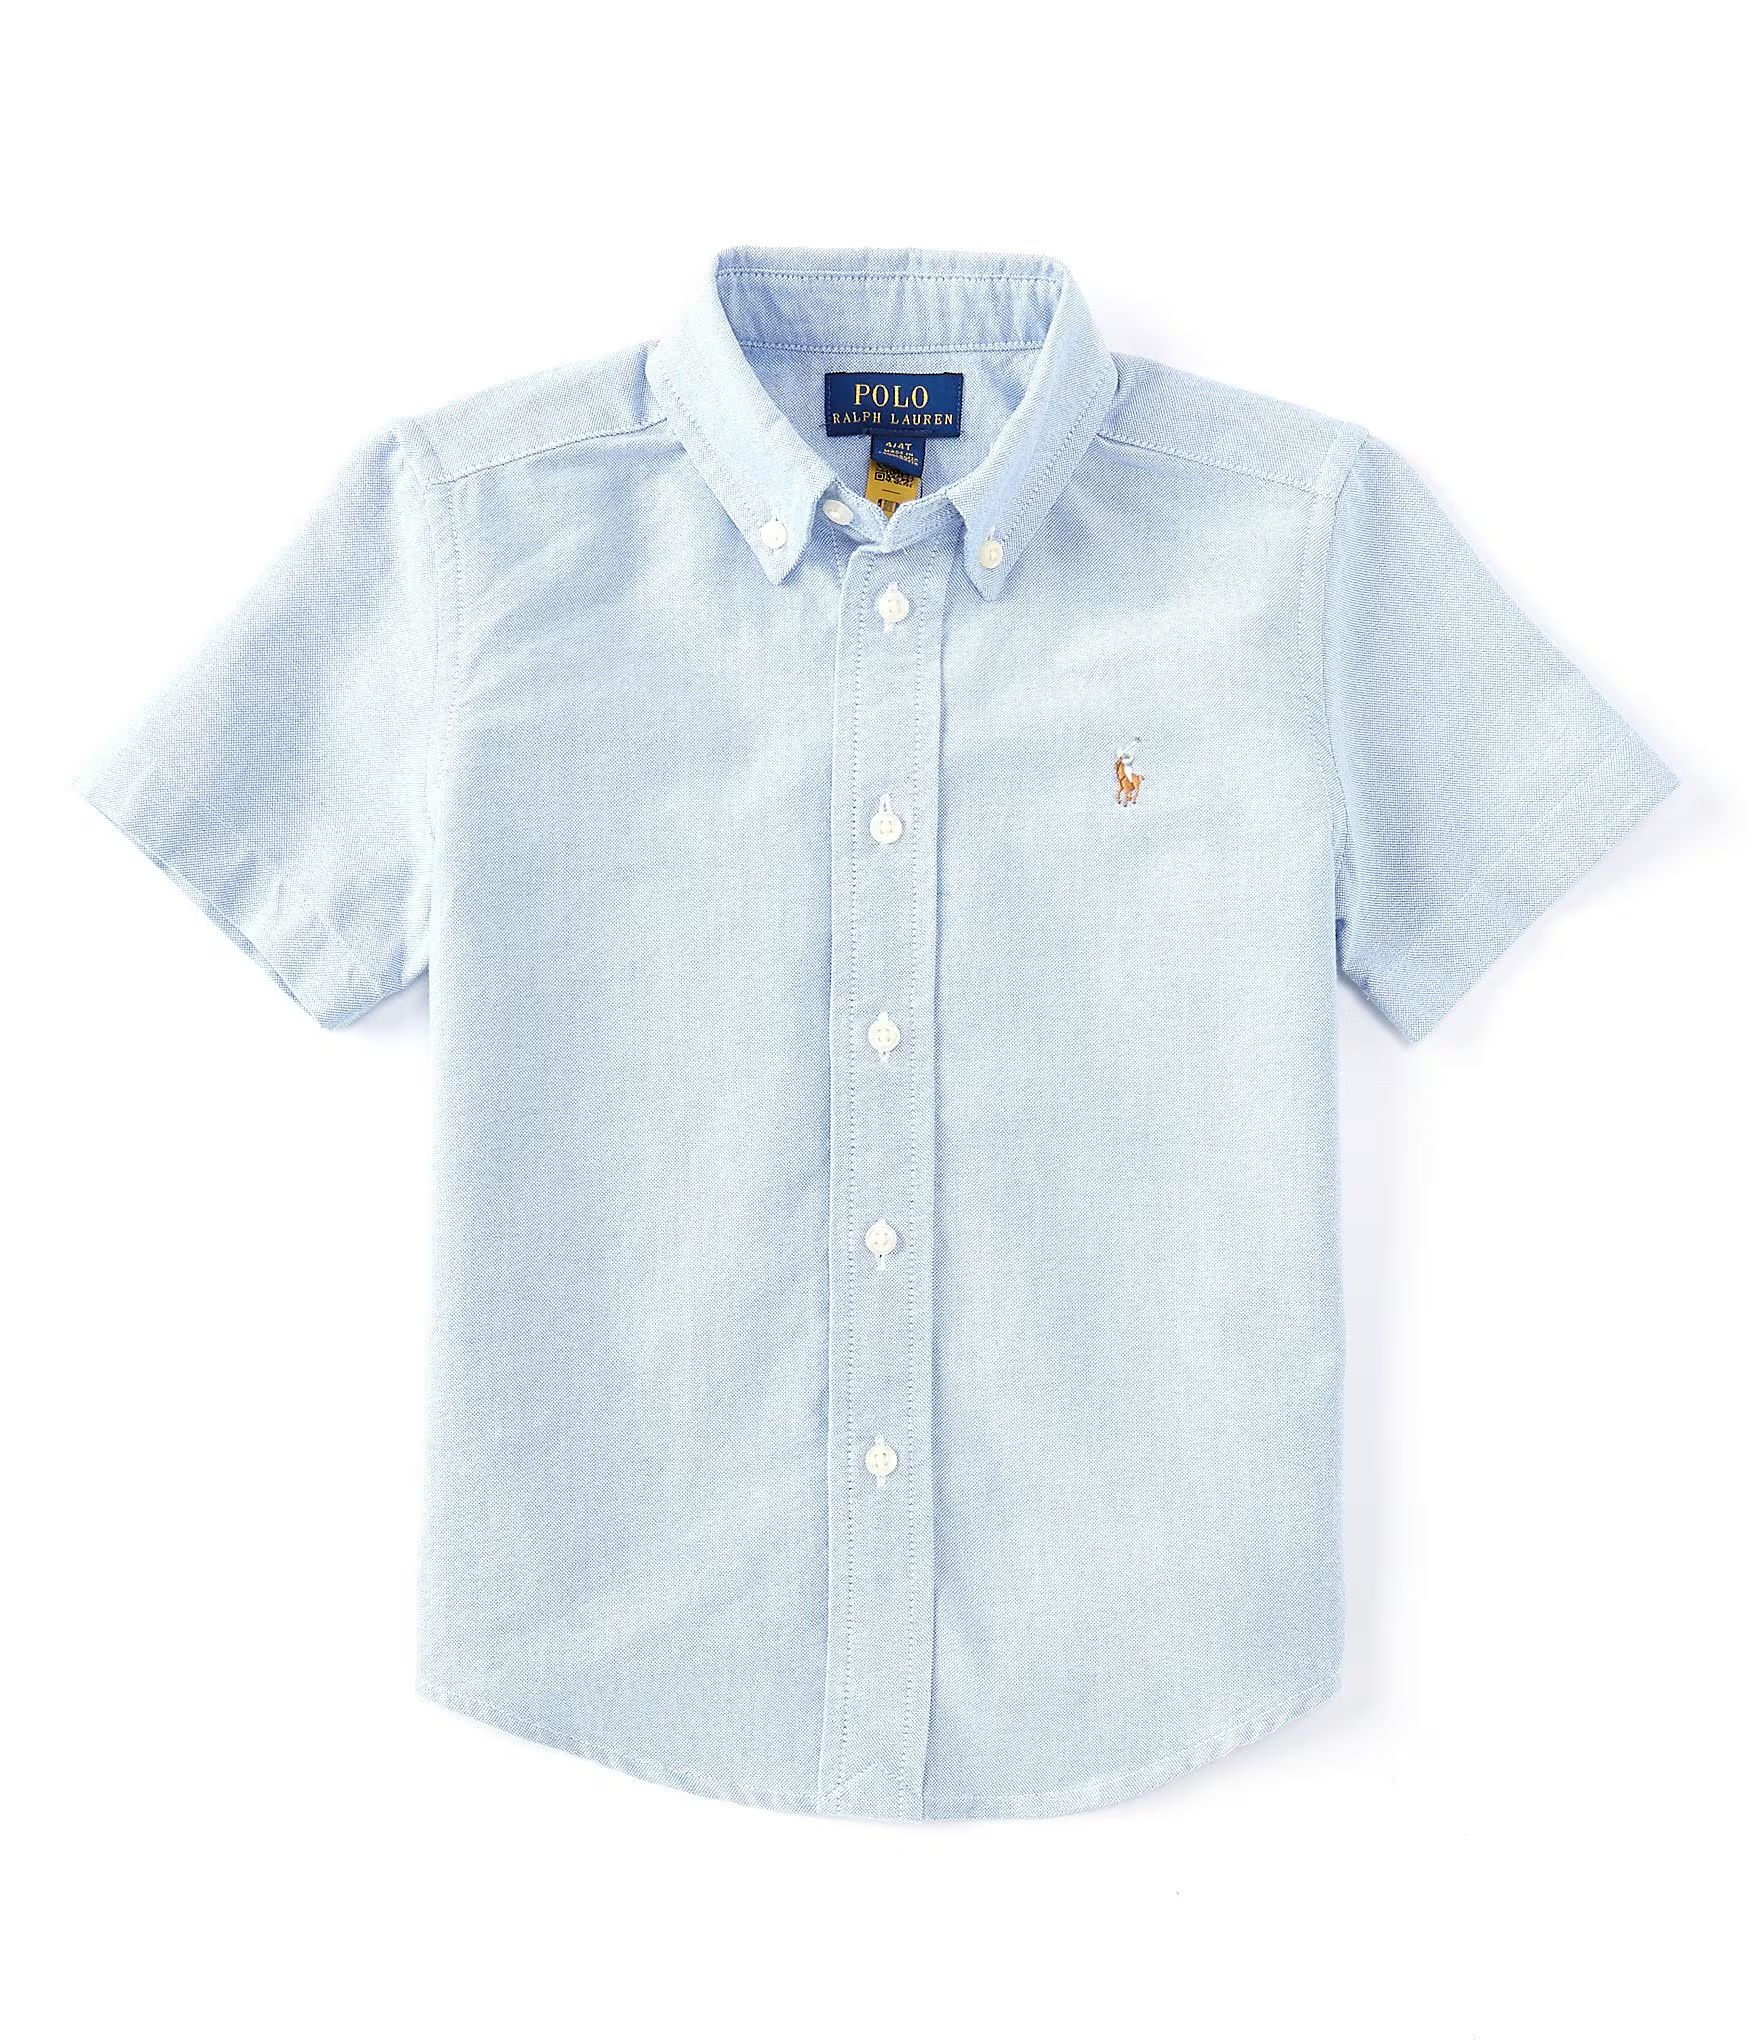 Little Boys 2T-7 Cotton Oxford Short-Sleeve Button Down Shirt | Dillard's